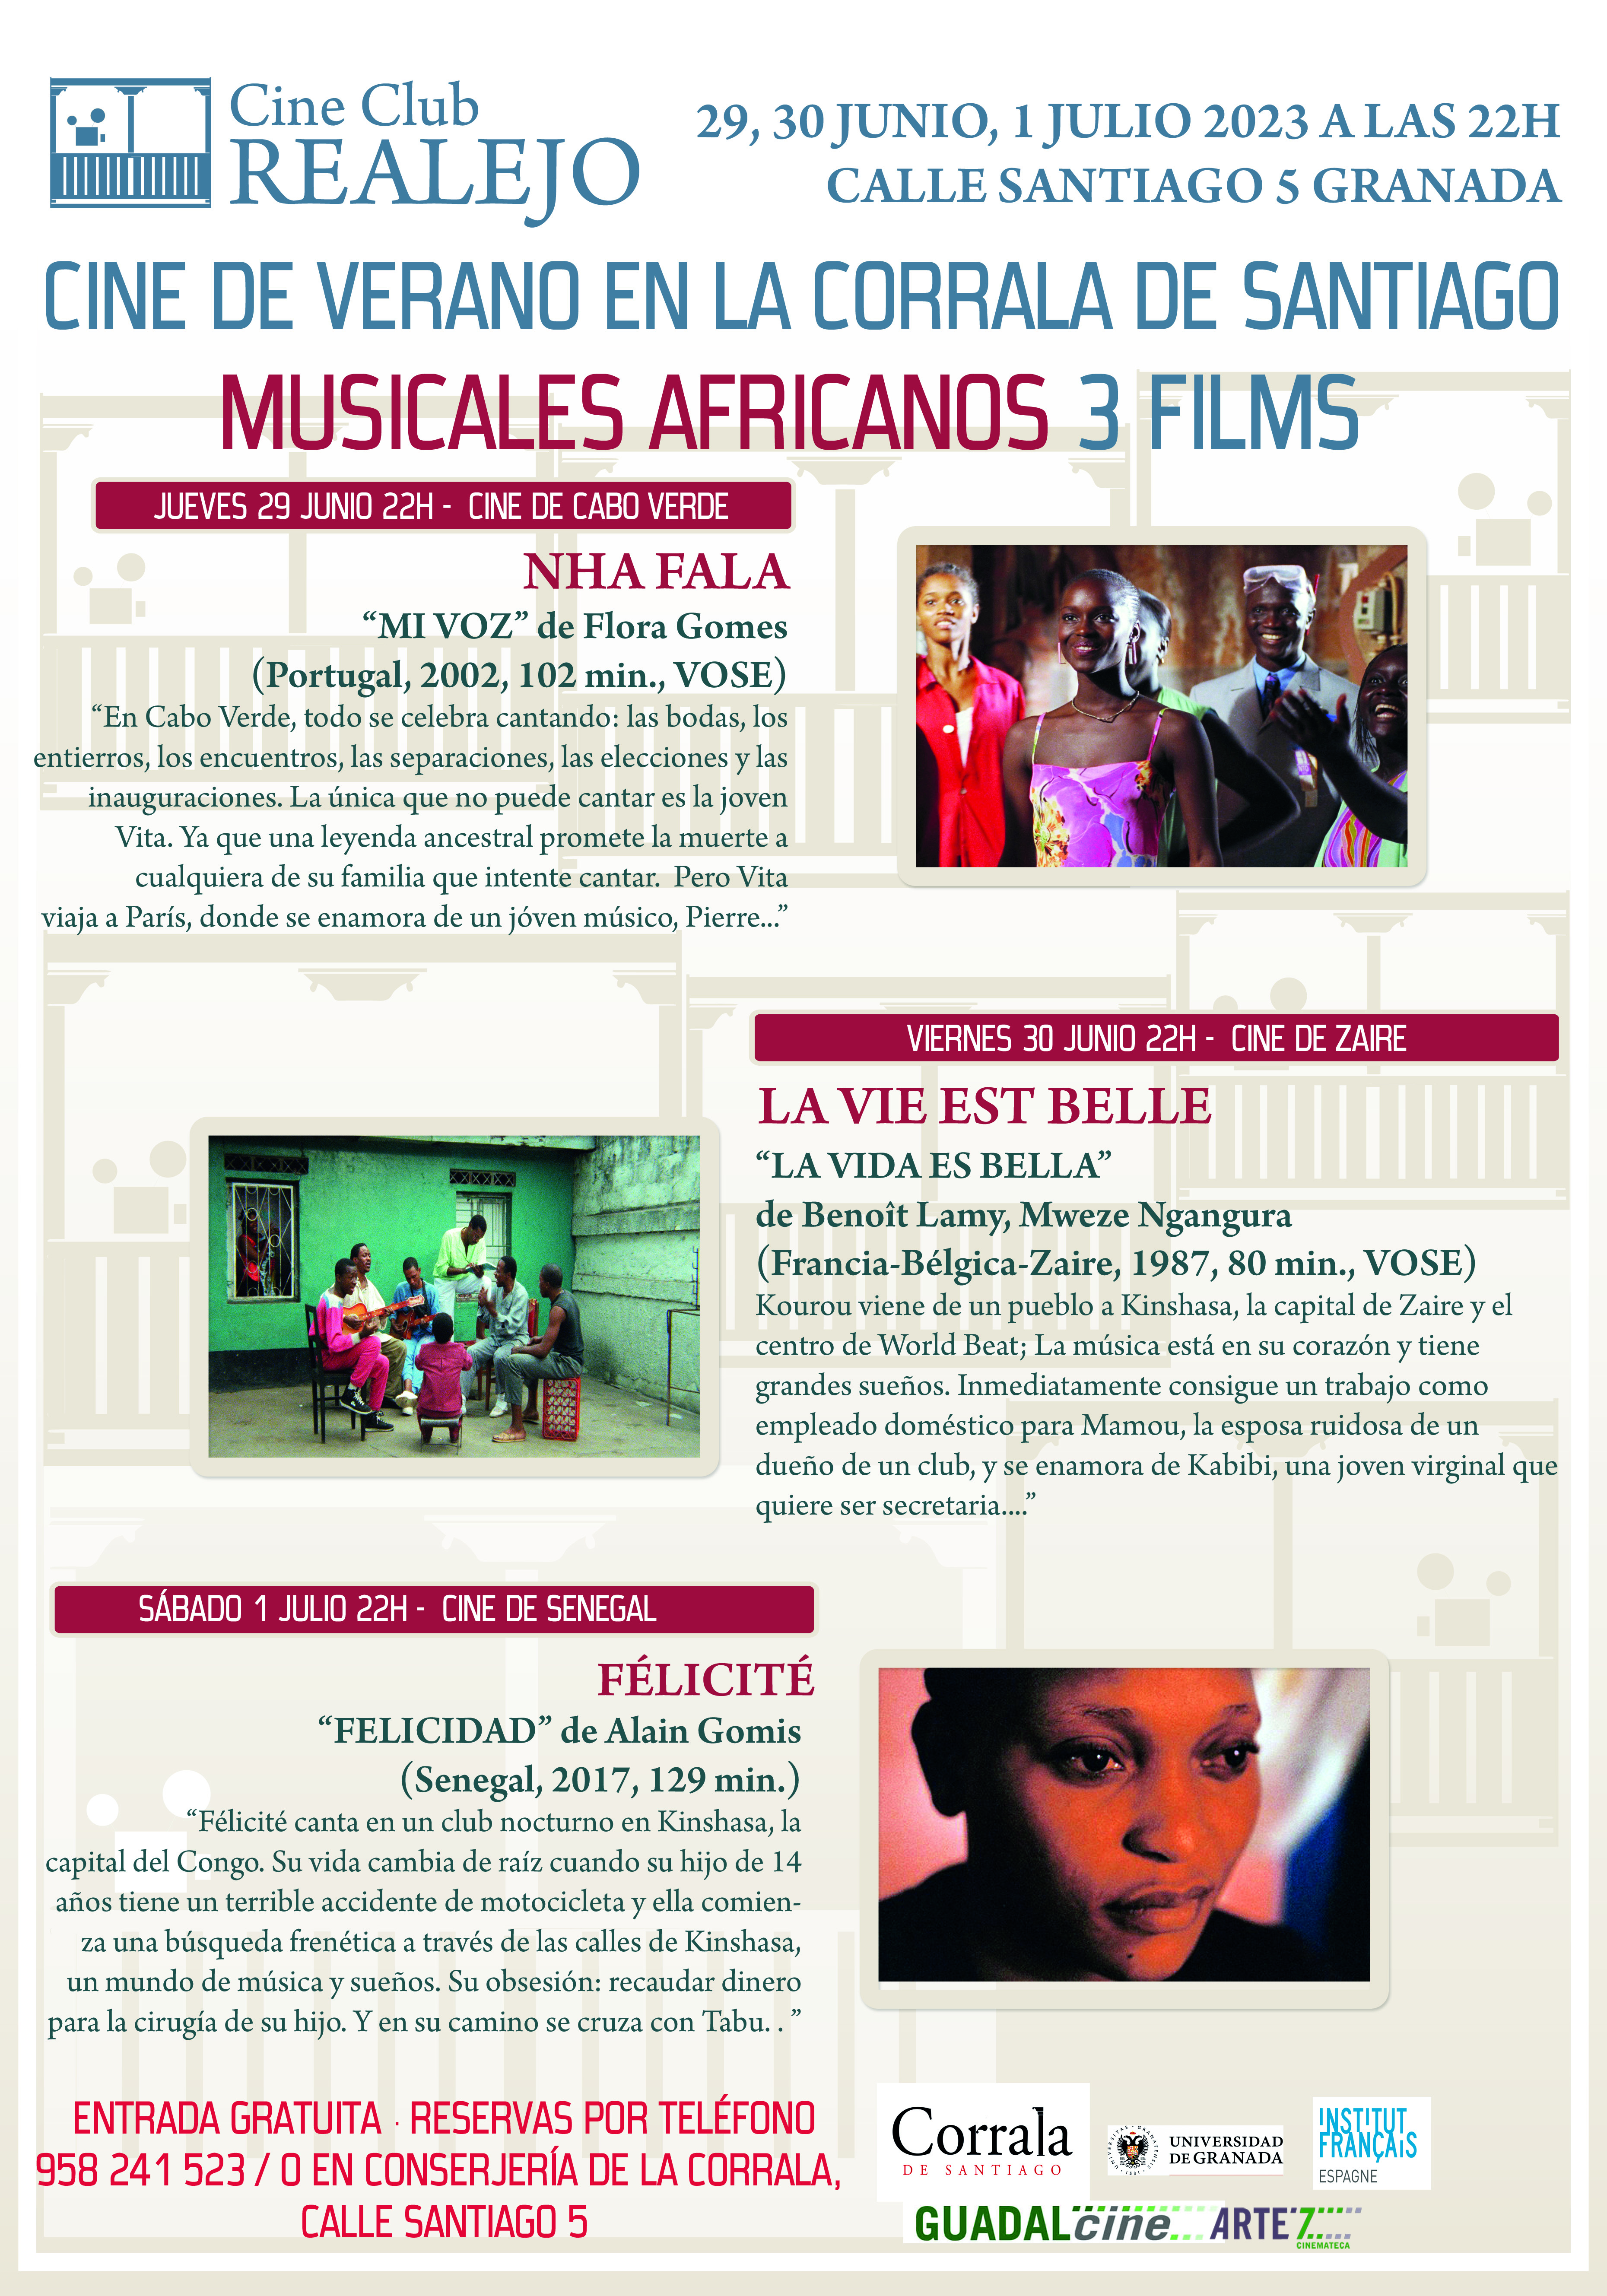 Vuelve el Cine de Verano a la Corrala los días 29 y 30 de junio (jueves y viernes), y 1 de julio (sábado). En esta ocasión disfrutaremos de un pequeño ciclo de Musicales Africanos seleccionados por nuestro "cinehasta" Manuel Polls.